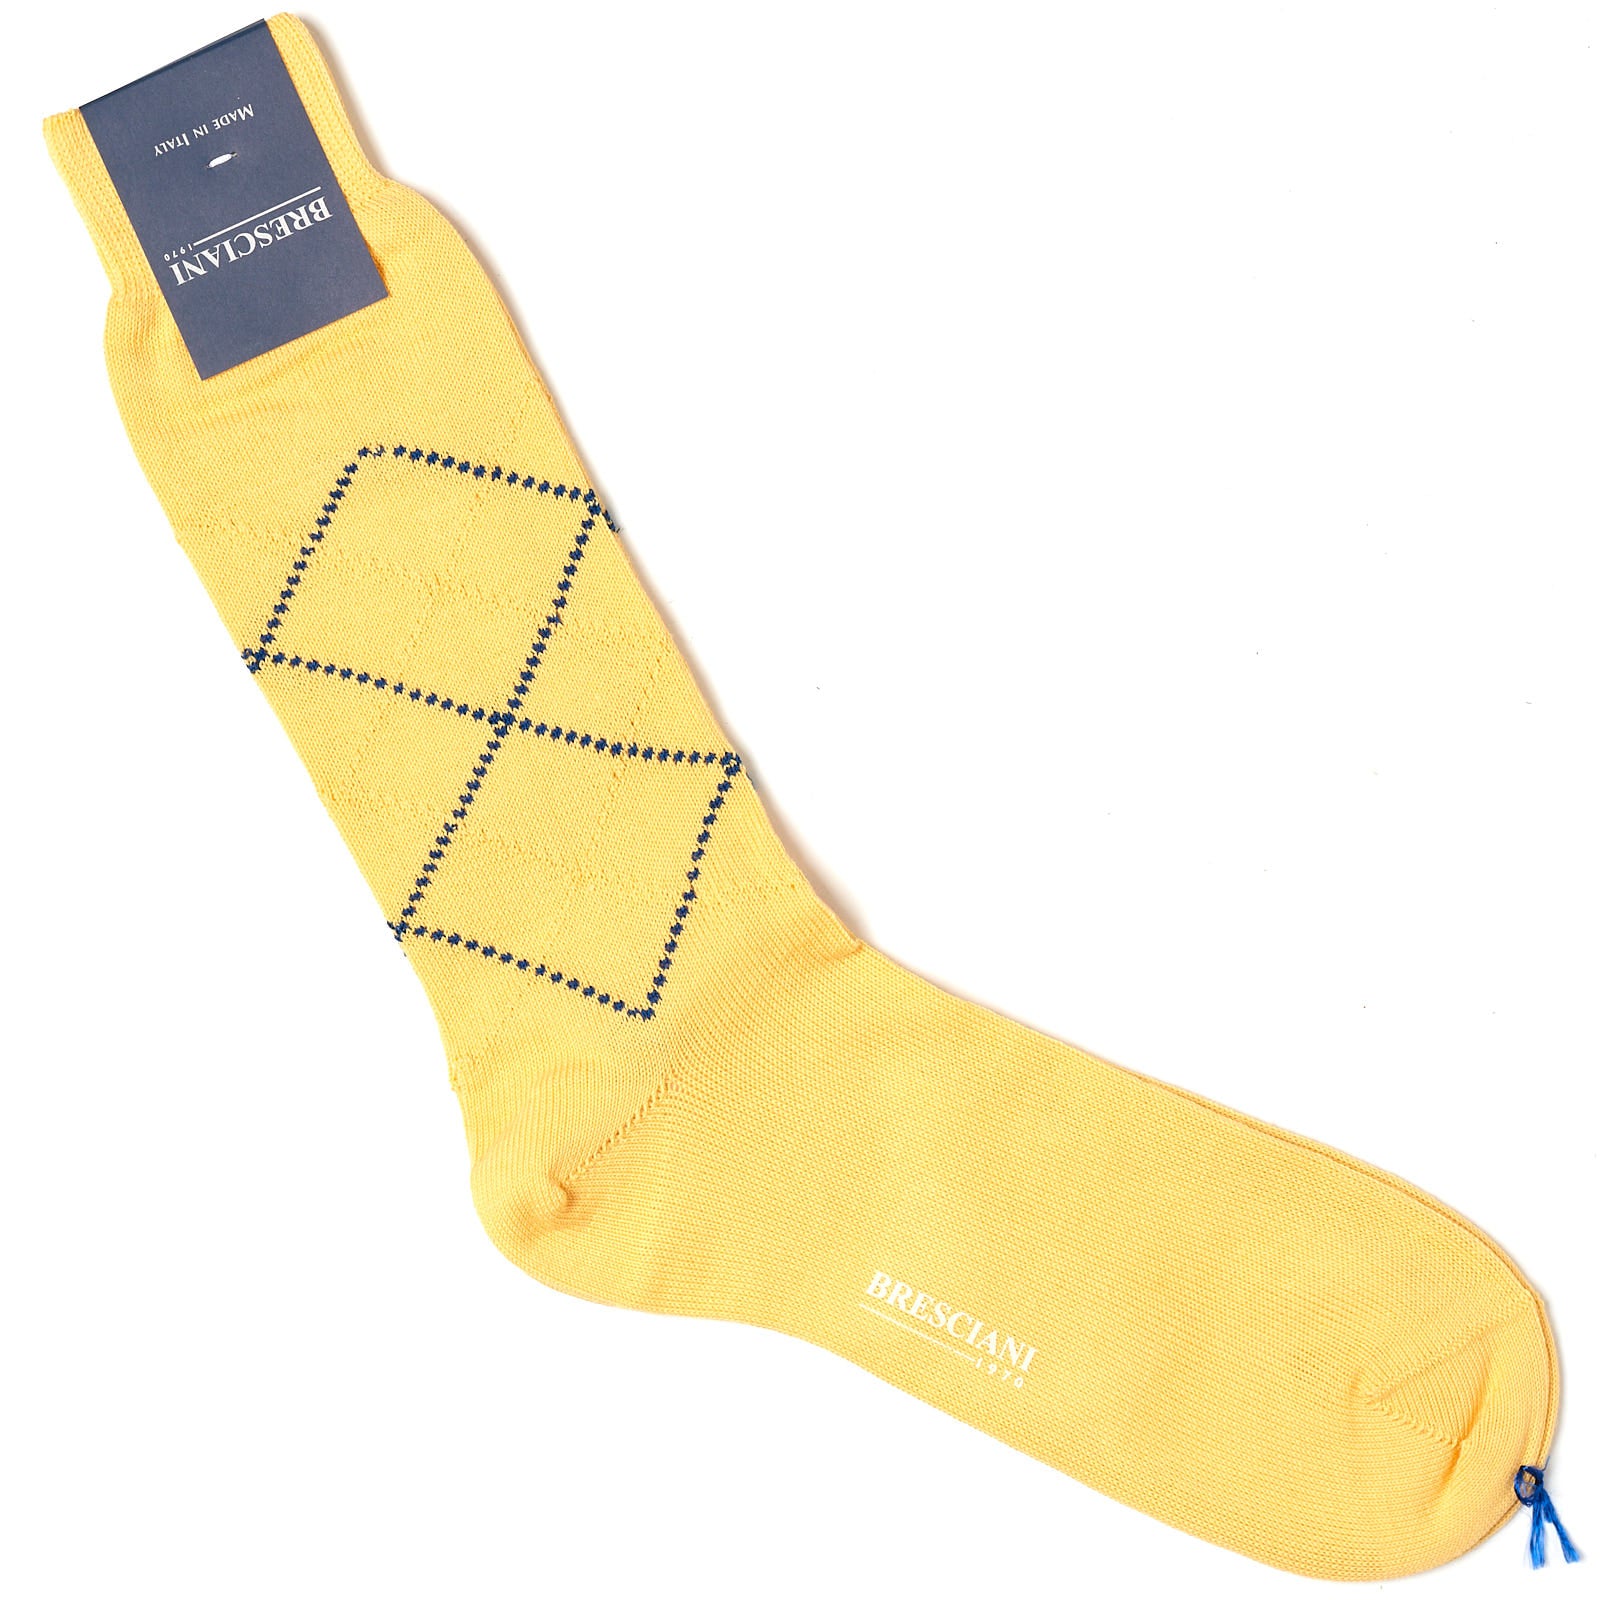 BRESCIANI Cotton Argyle Design Mid Calf Length Socks M-L BRESCIANI